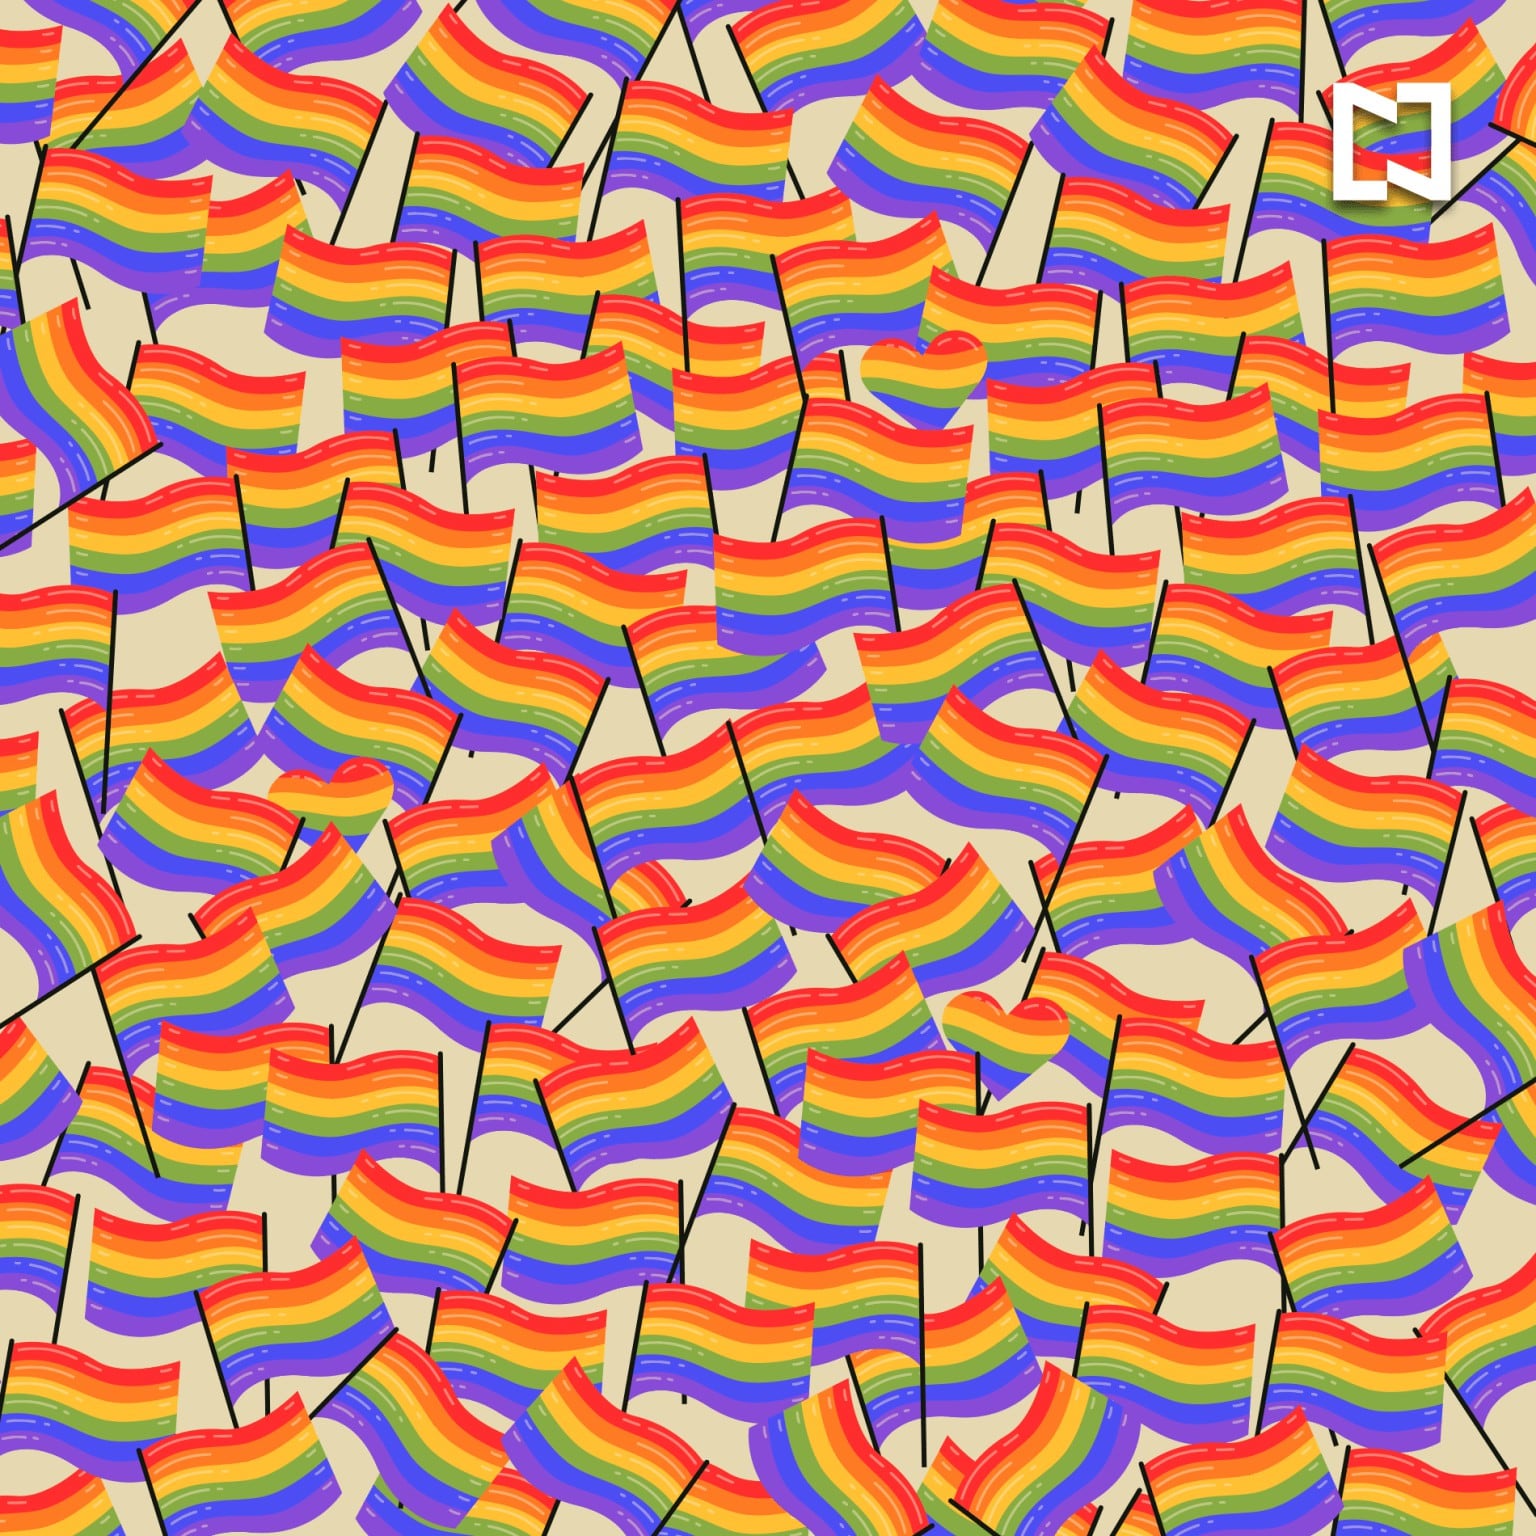 Busca aquí y ahora los corazones entre las banderas del orgullo LGTBIQ+ en solo 5 segundos. (Fotos: Noticieros Televisa)